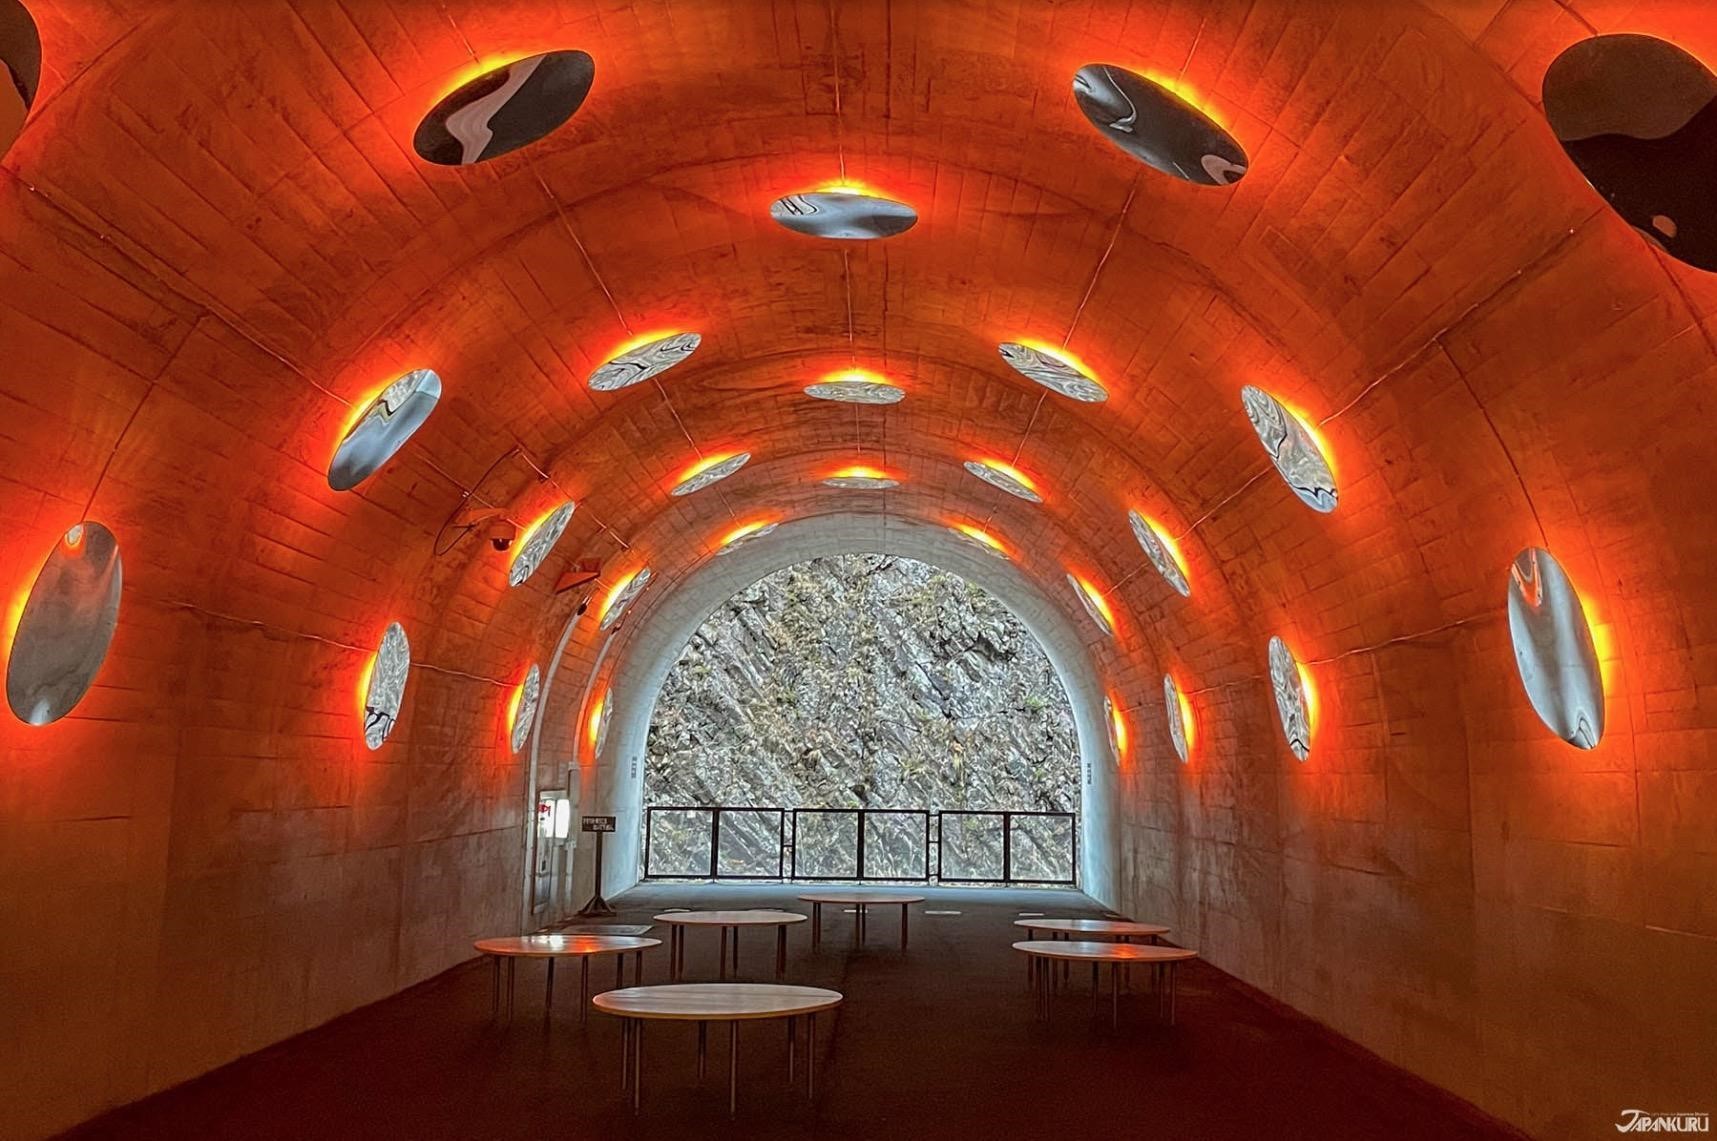 Ma Yansong / MAD Architects, “Tunnel of Light” (Echigo-Tsumari Art Field)